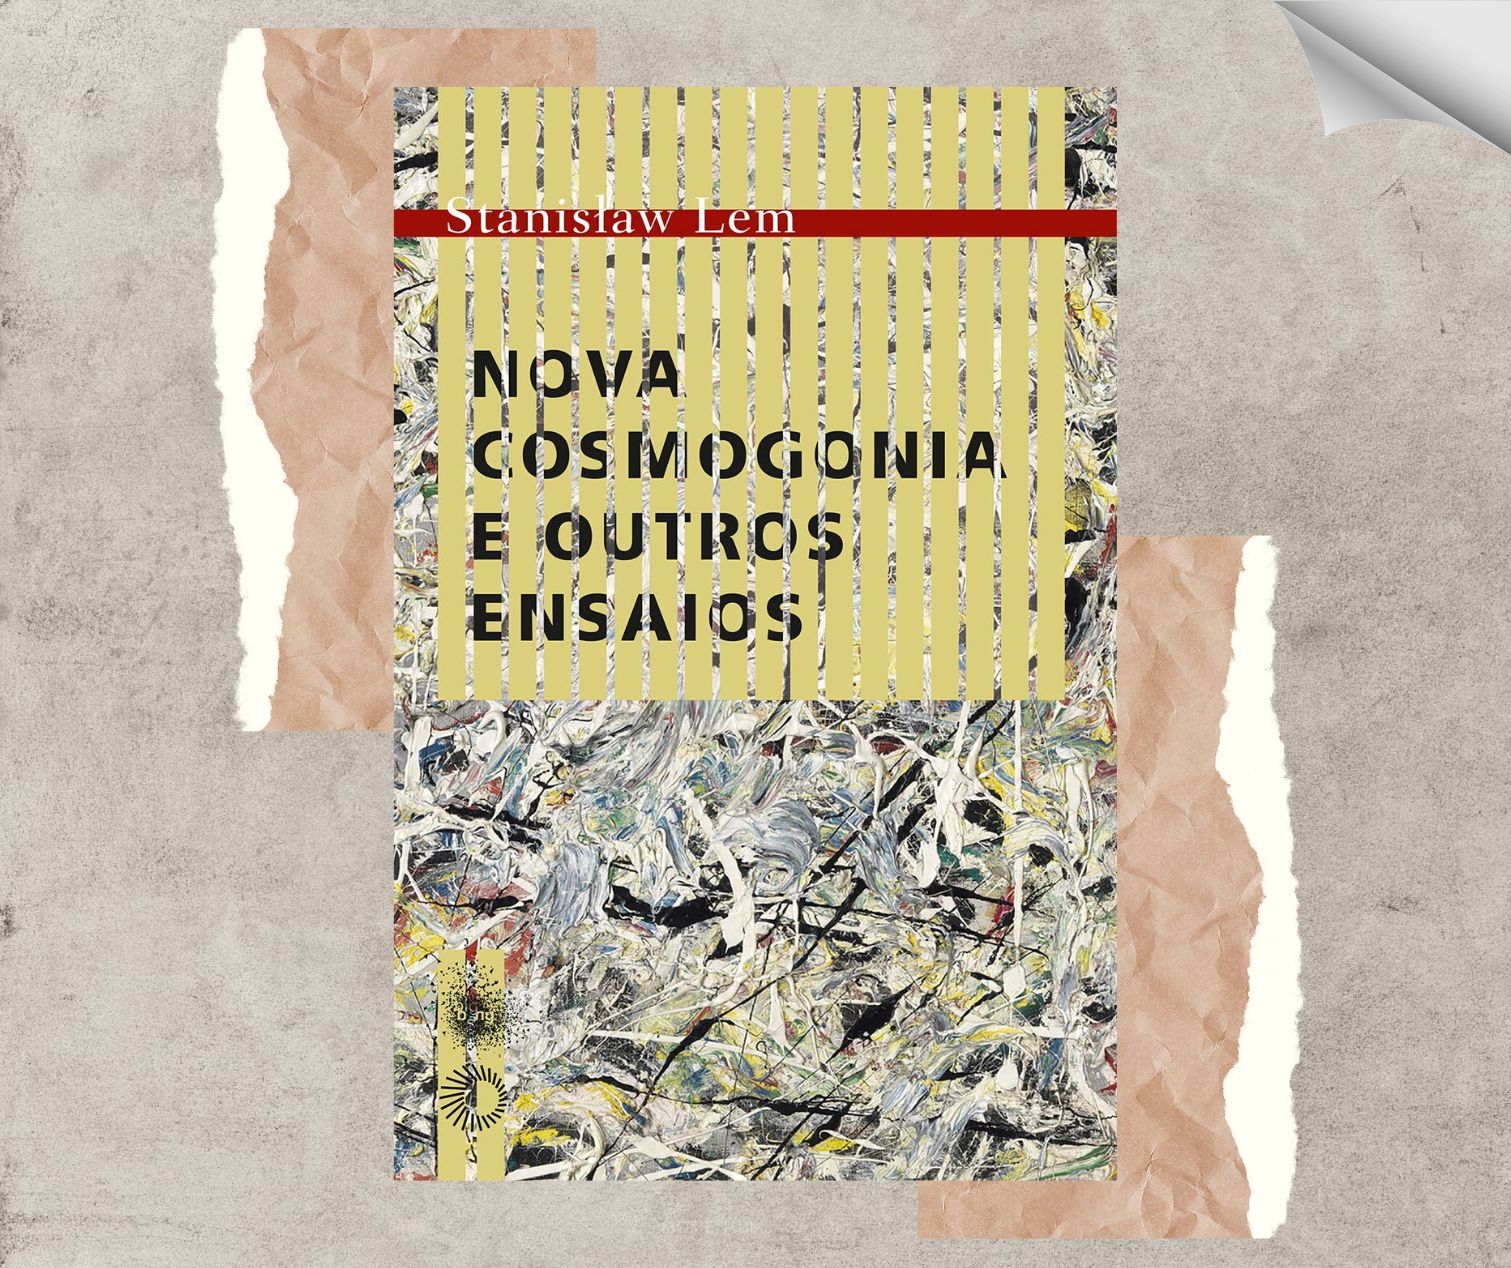 Resenha: Nova Cosmogonia e Outros Ensaios, de Stanislaw Lem